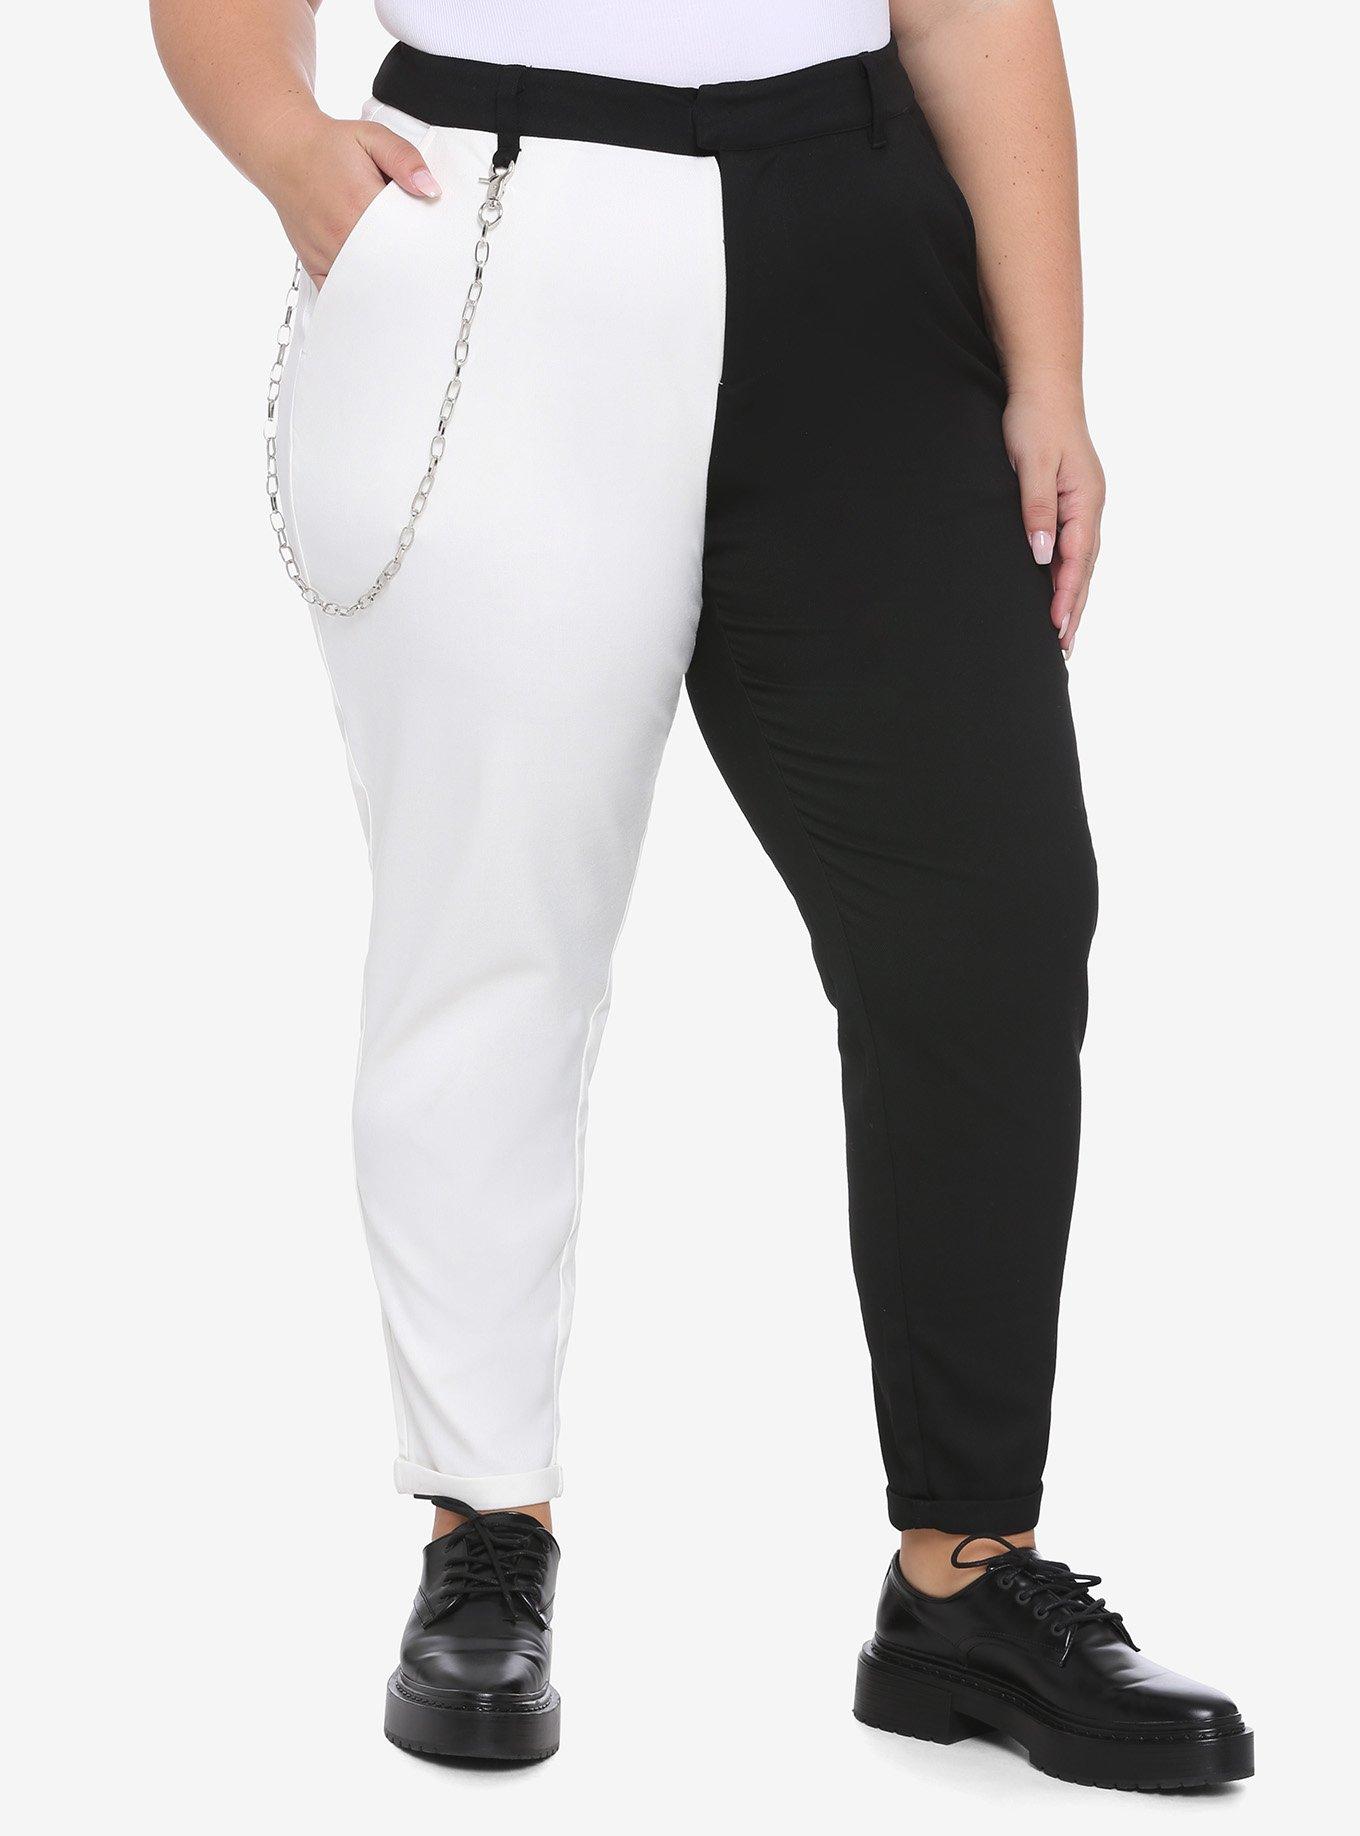 Black & White Split Pants With Detachable Chain Plus Size, MULTI, hi-res